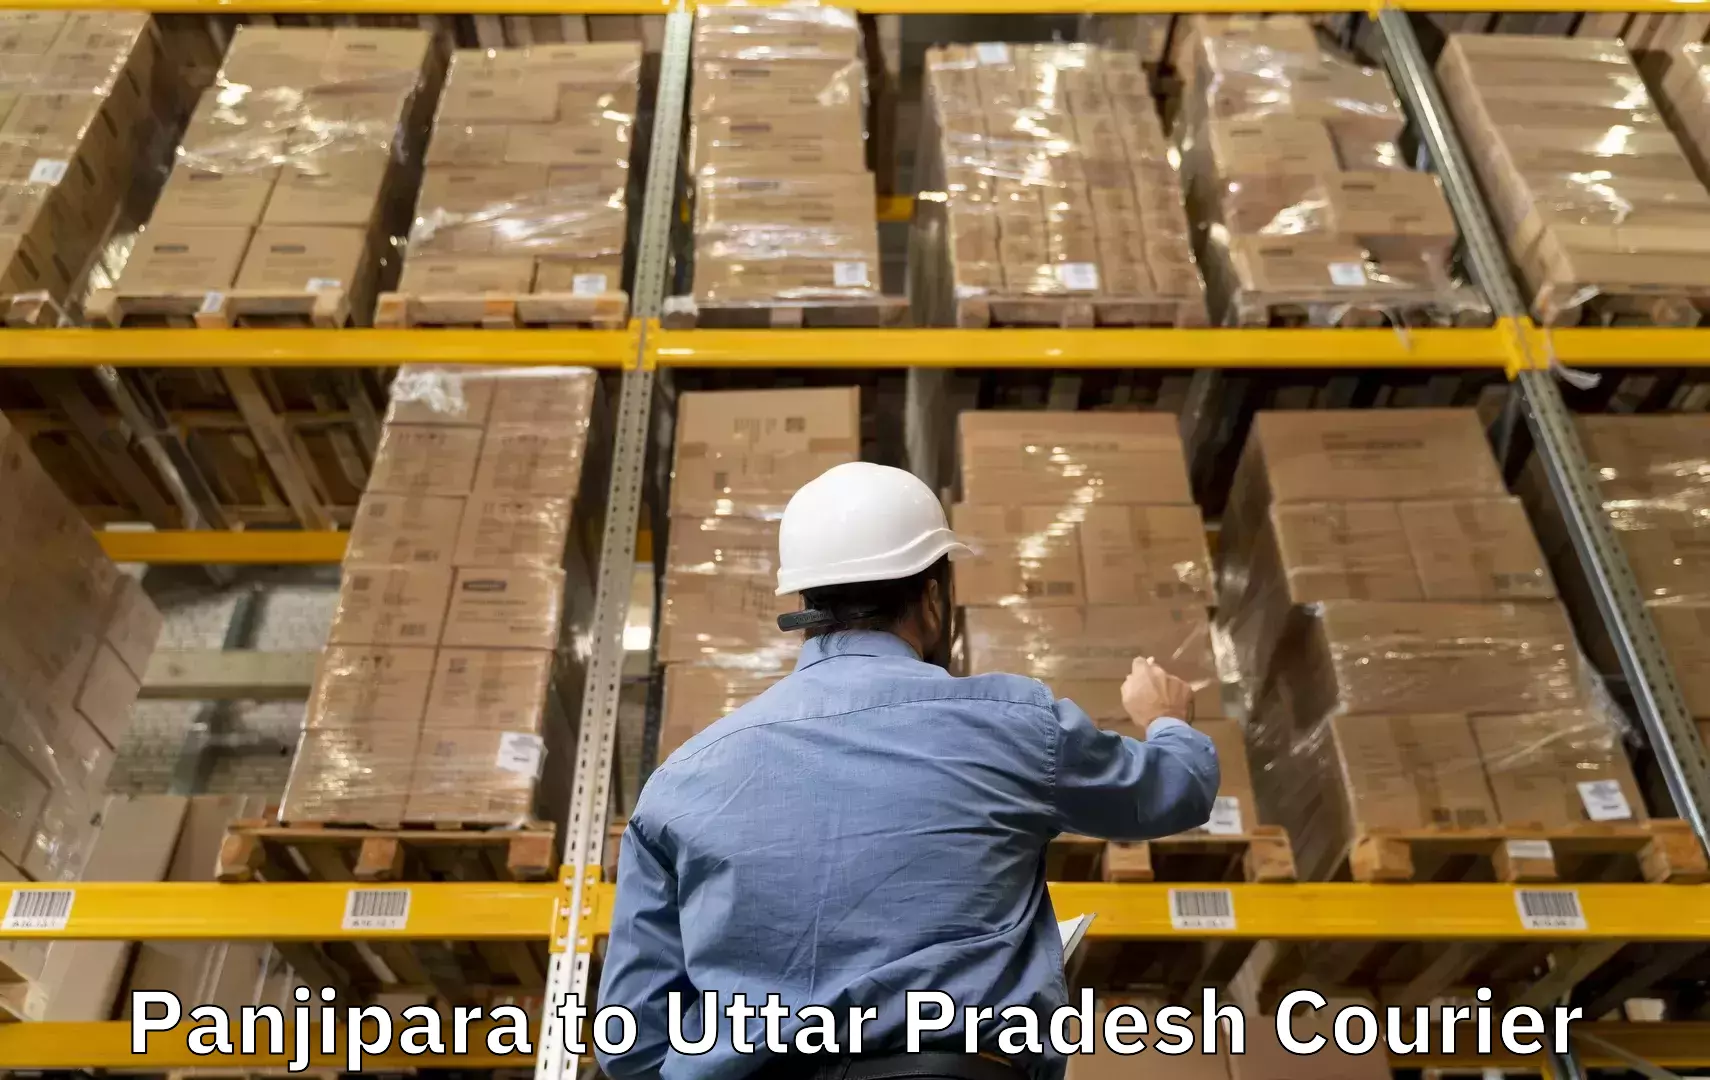 Baggage courier rates calculator Panjipara to Modinagar